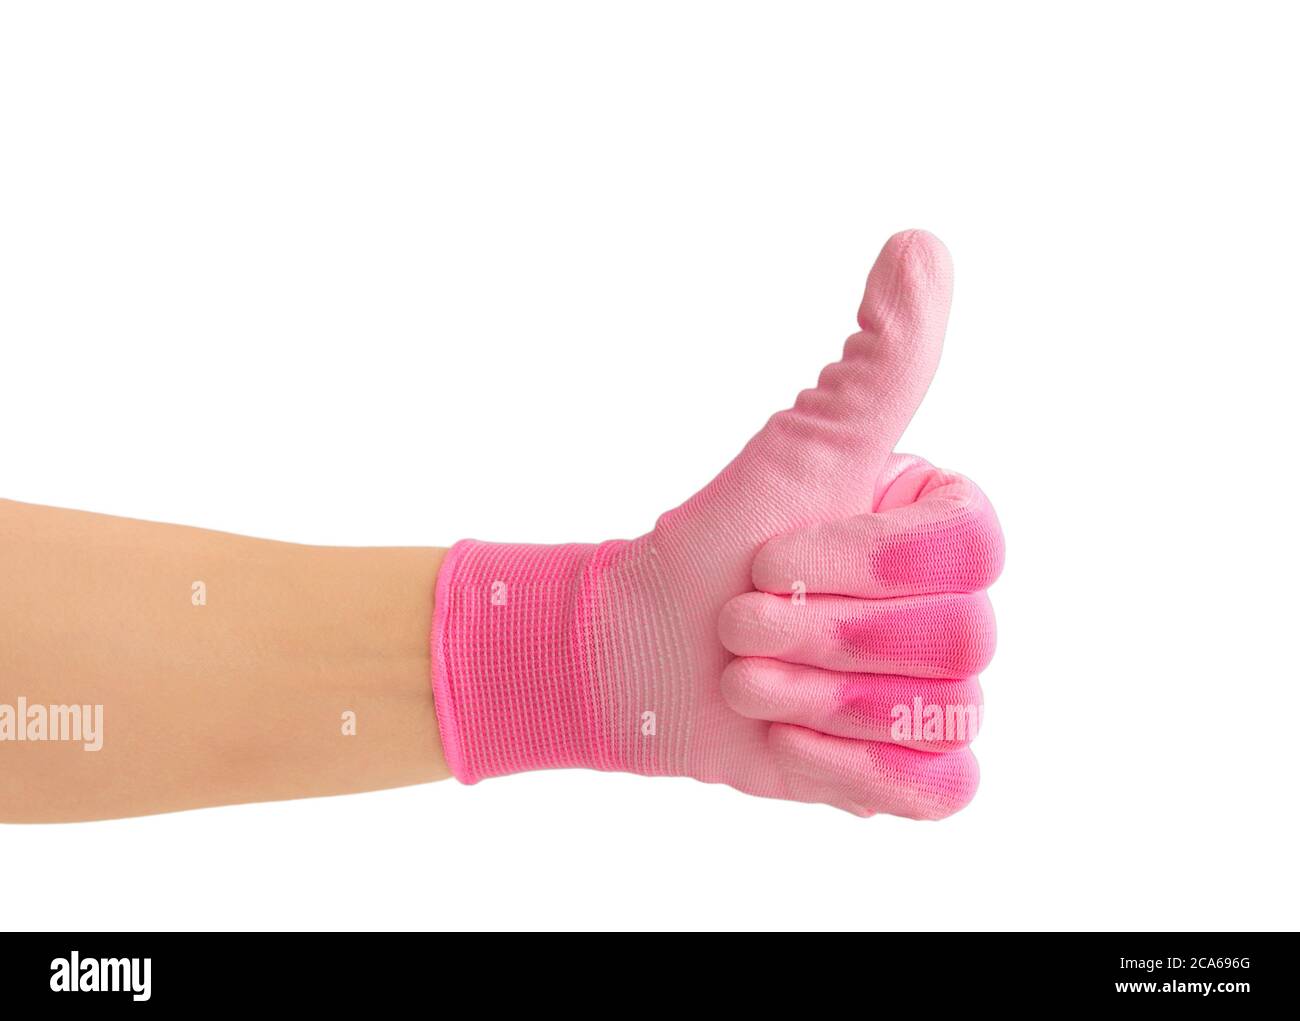 Nahaufnahme der Person Hand trägt lebendige Farbe rosa Gartenarbeit Handschuh und zeigt Daumen nach oben wie Geste. Isoliert auf weißem Hintergrund. Stockfoto